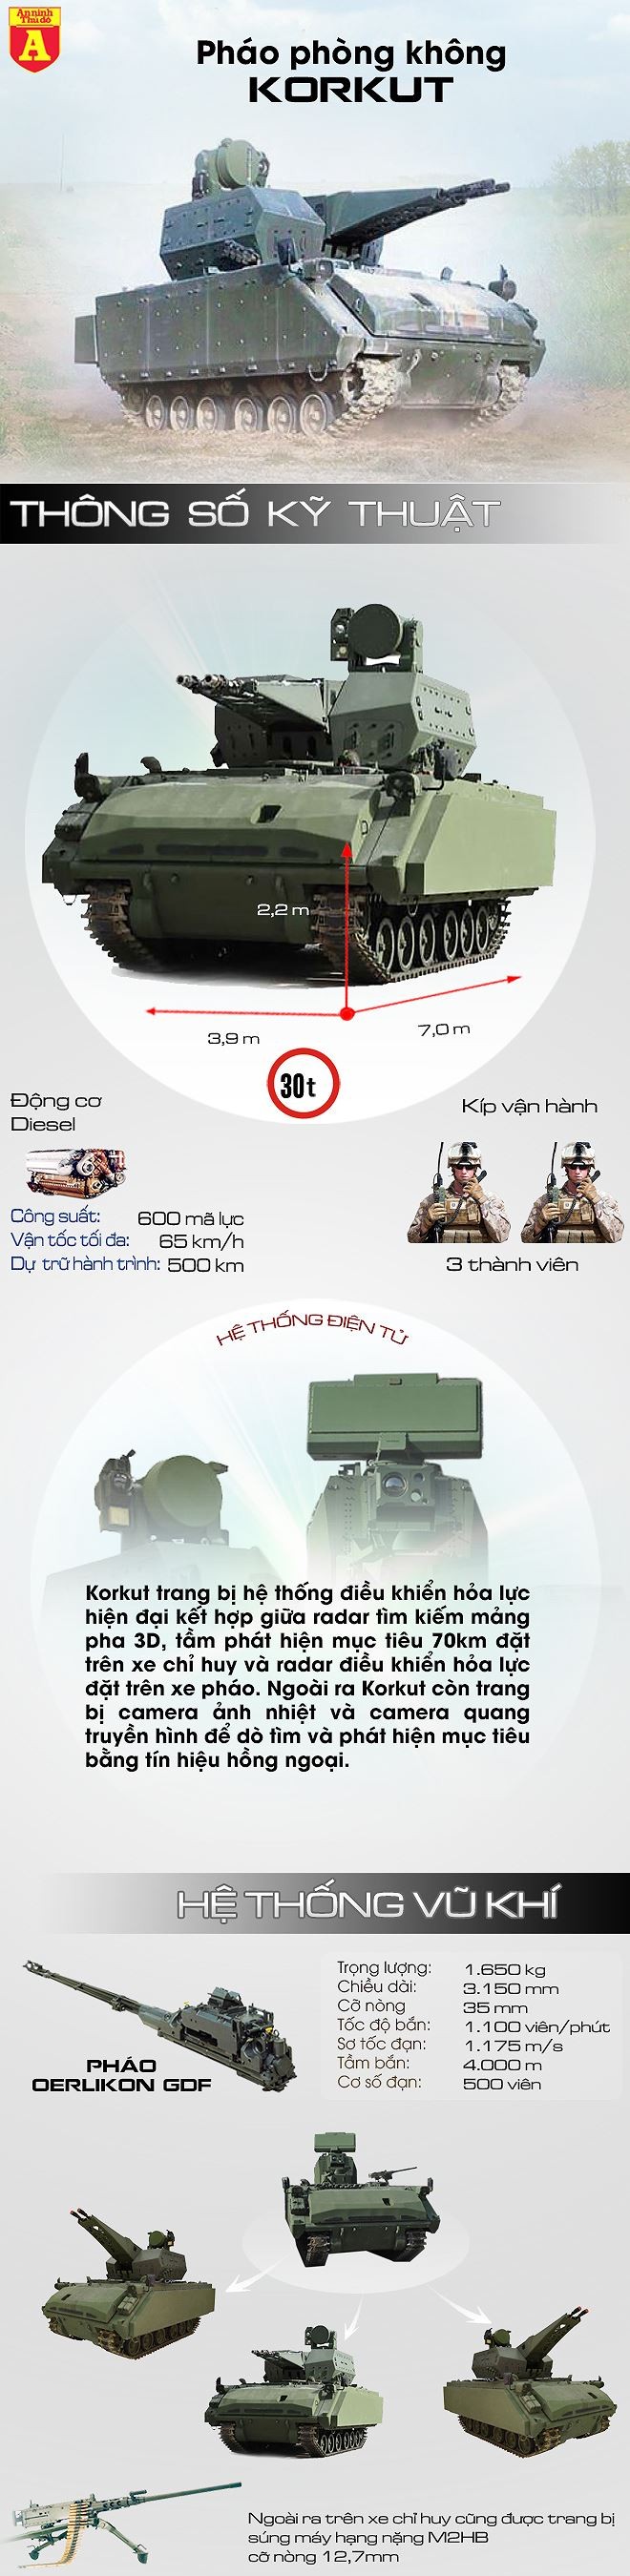 [Infographic] Sát thủ "Korkut" sẵn sàng "víu cổ" các loại máy bay tại chiến trường Syria ảnh 2